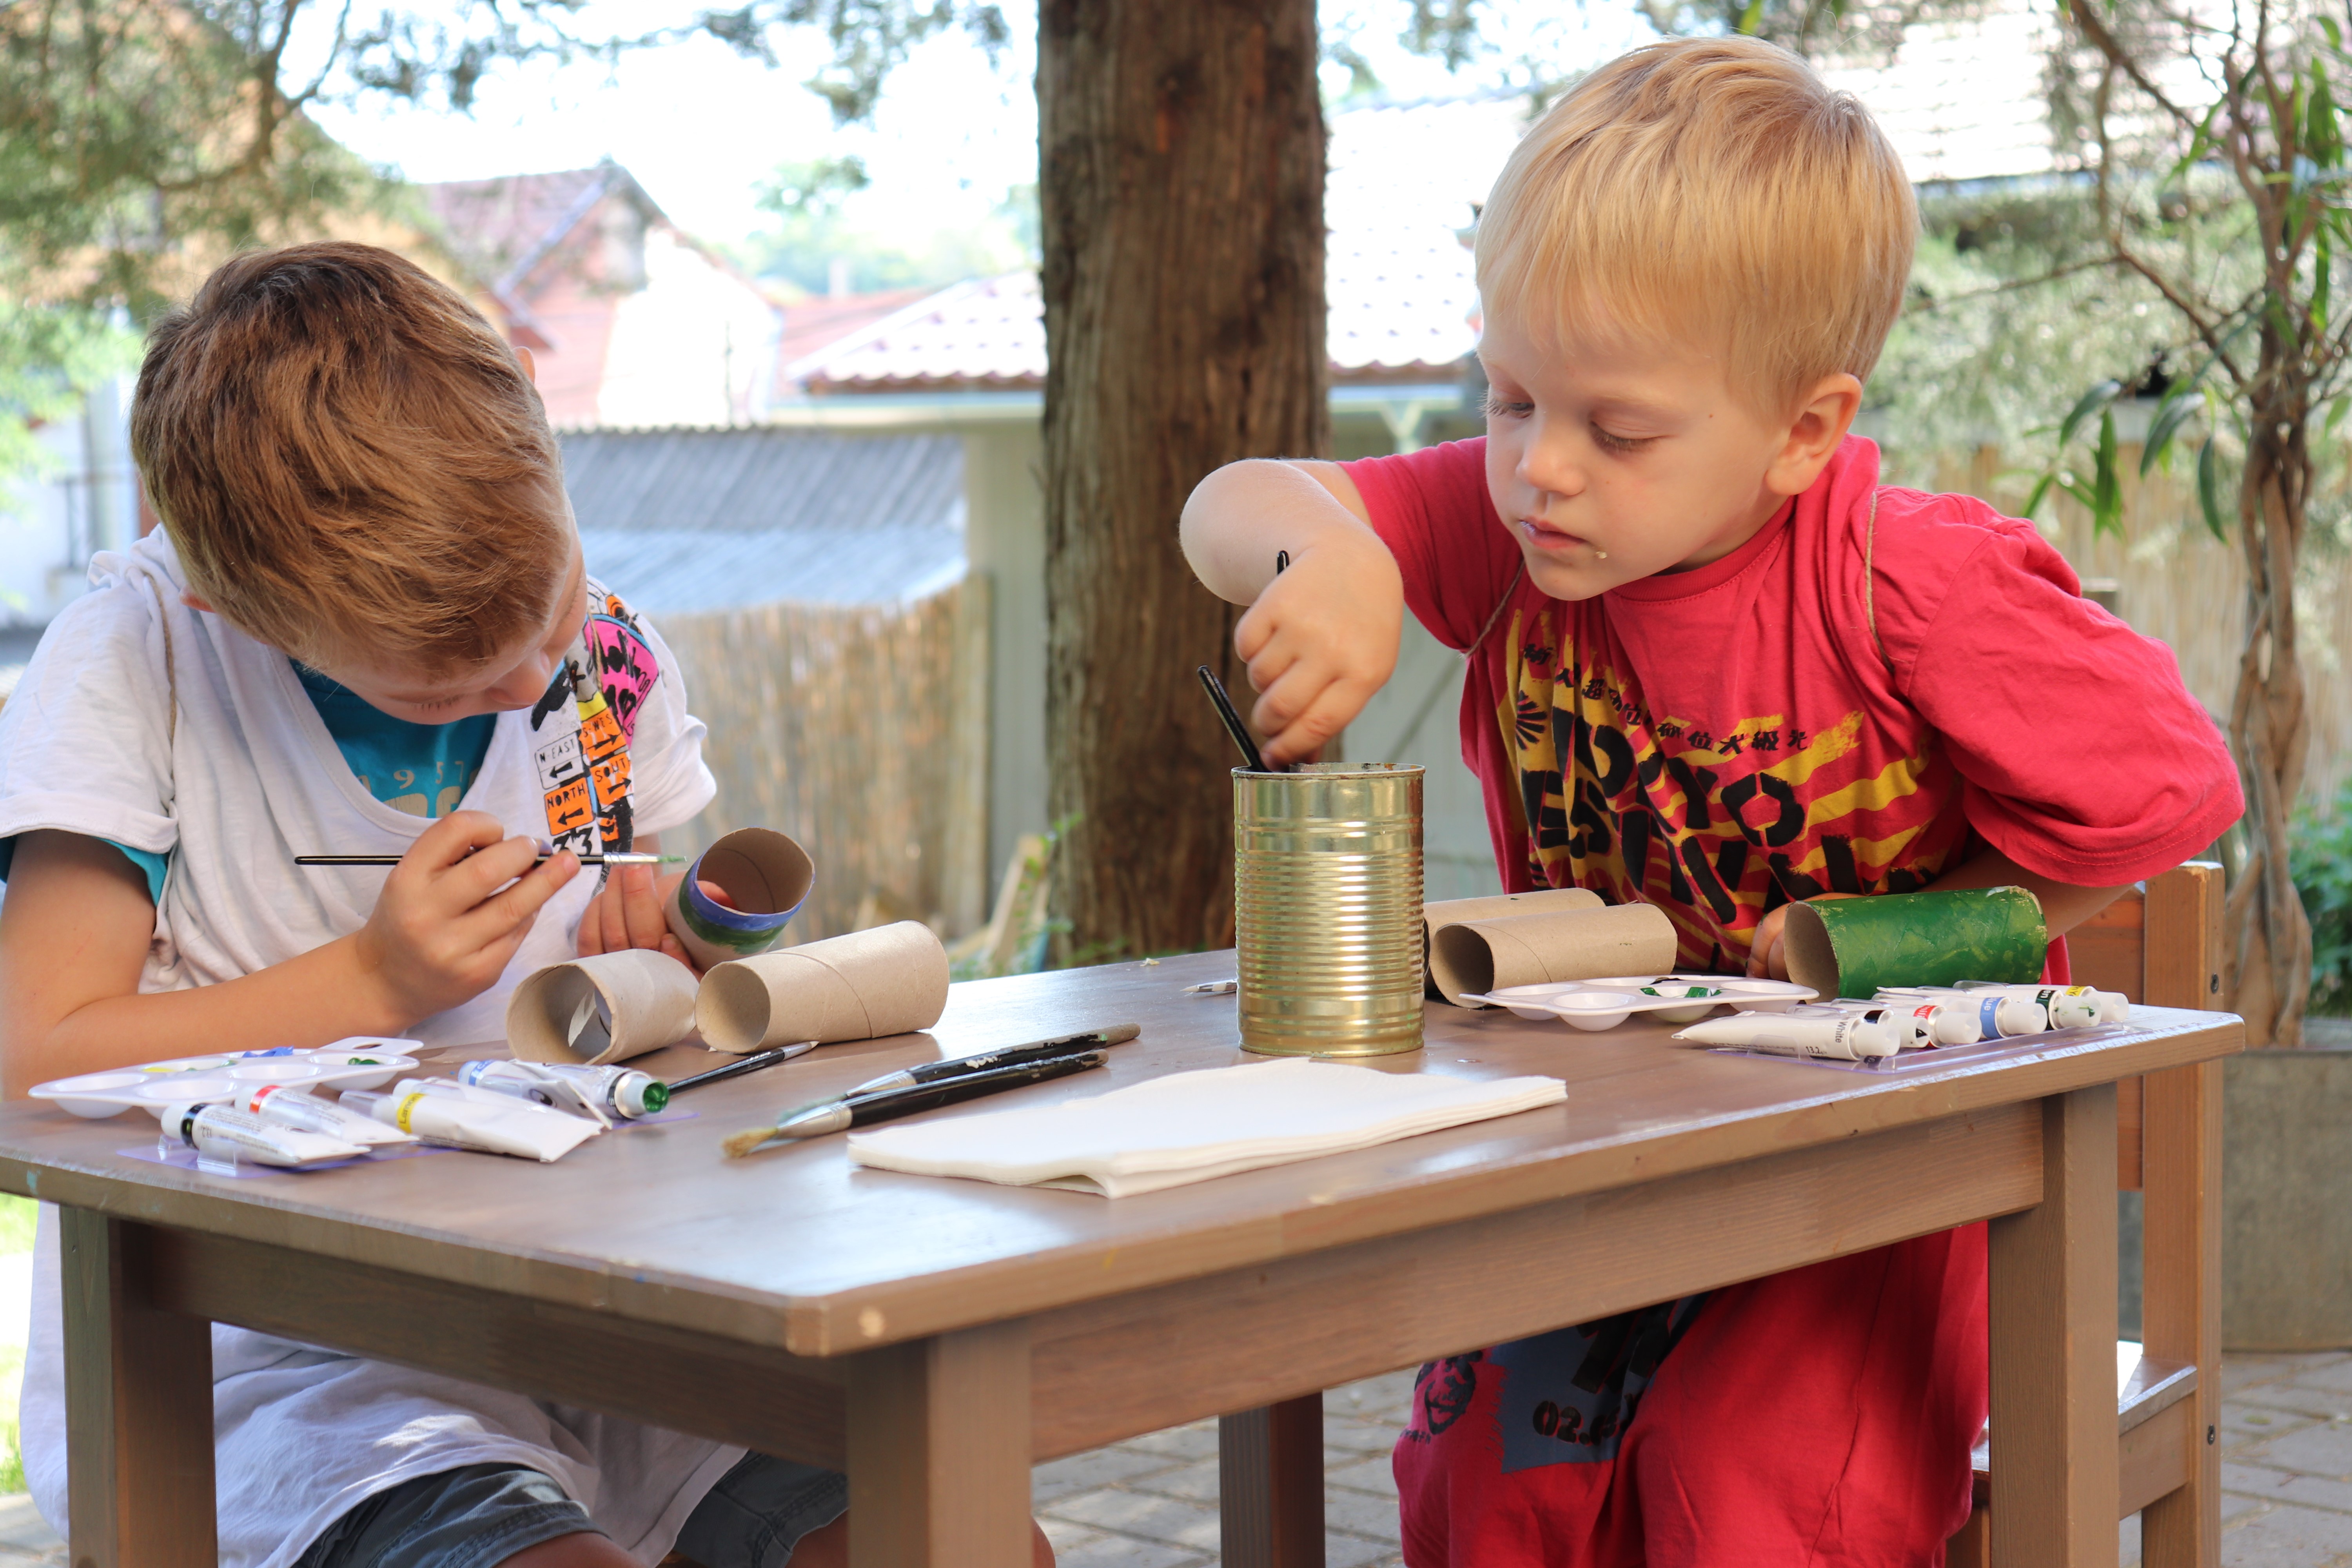 DIY csináldmagad gyerekkel Wc-papír guriga papír festés